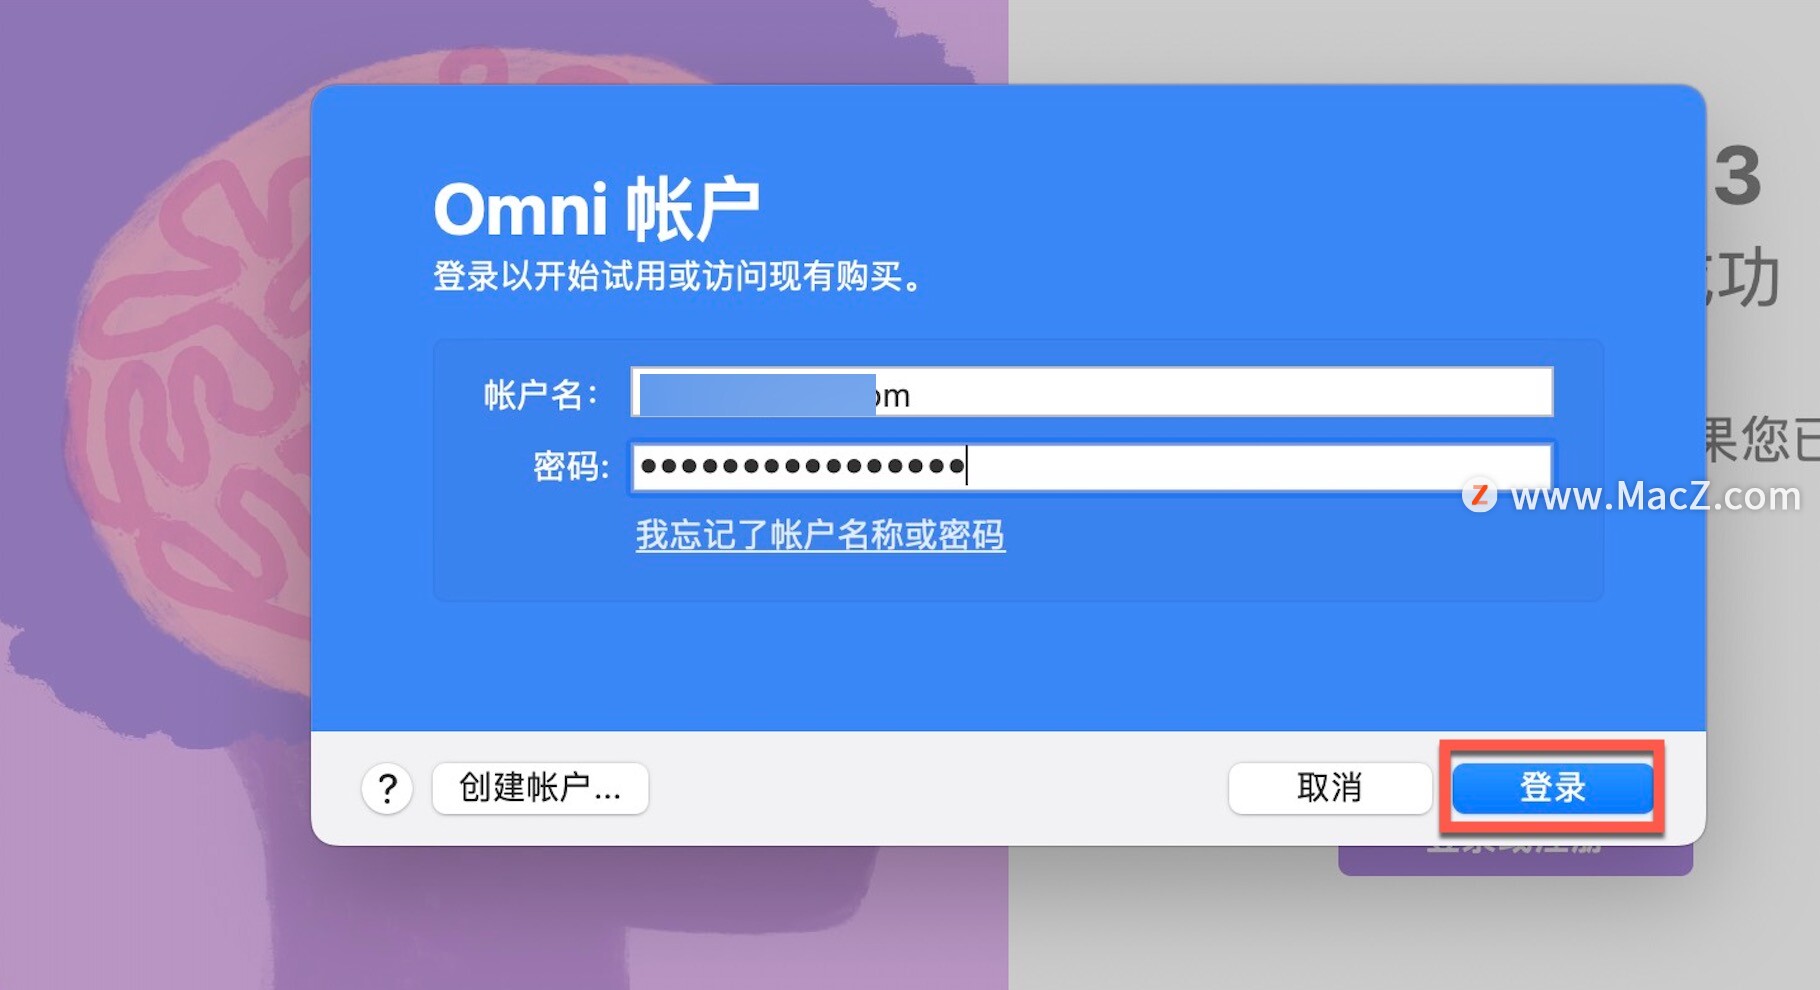 OmniFocus Pro 3  Mac破解版-OmniFocus Pro 3 for Mac(最强GTD时间管理工具)- Mac下载插图5